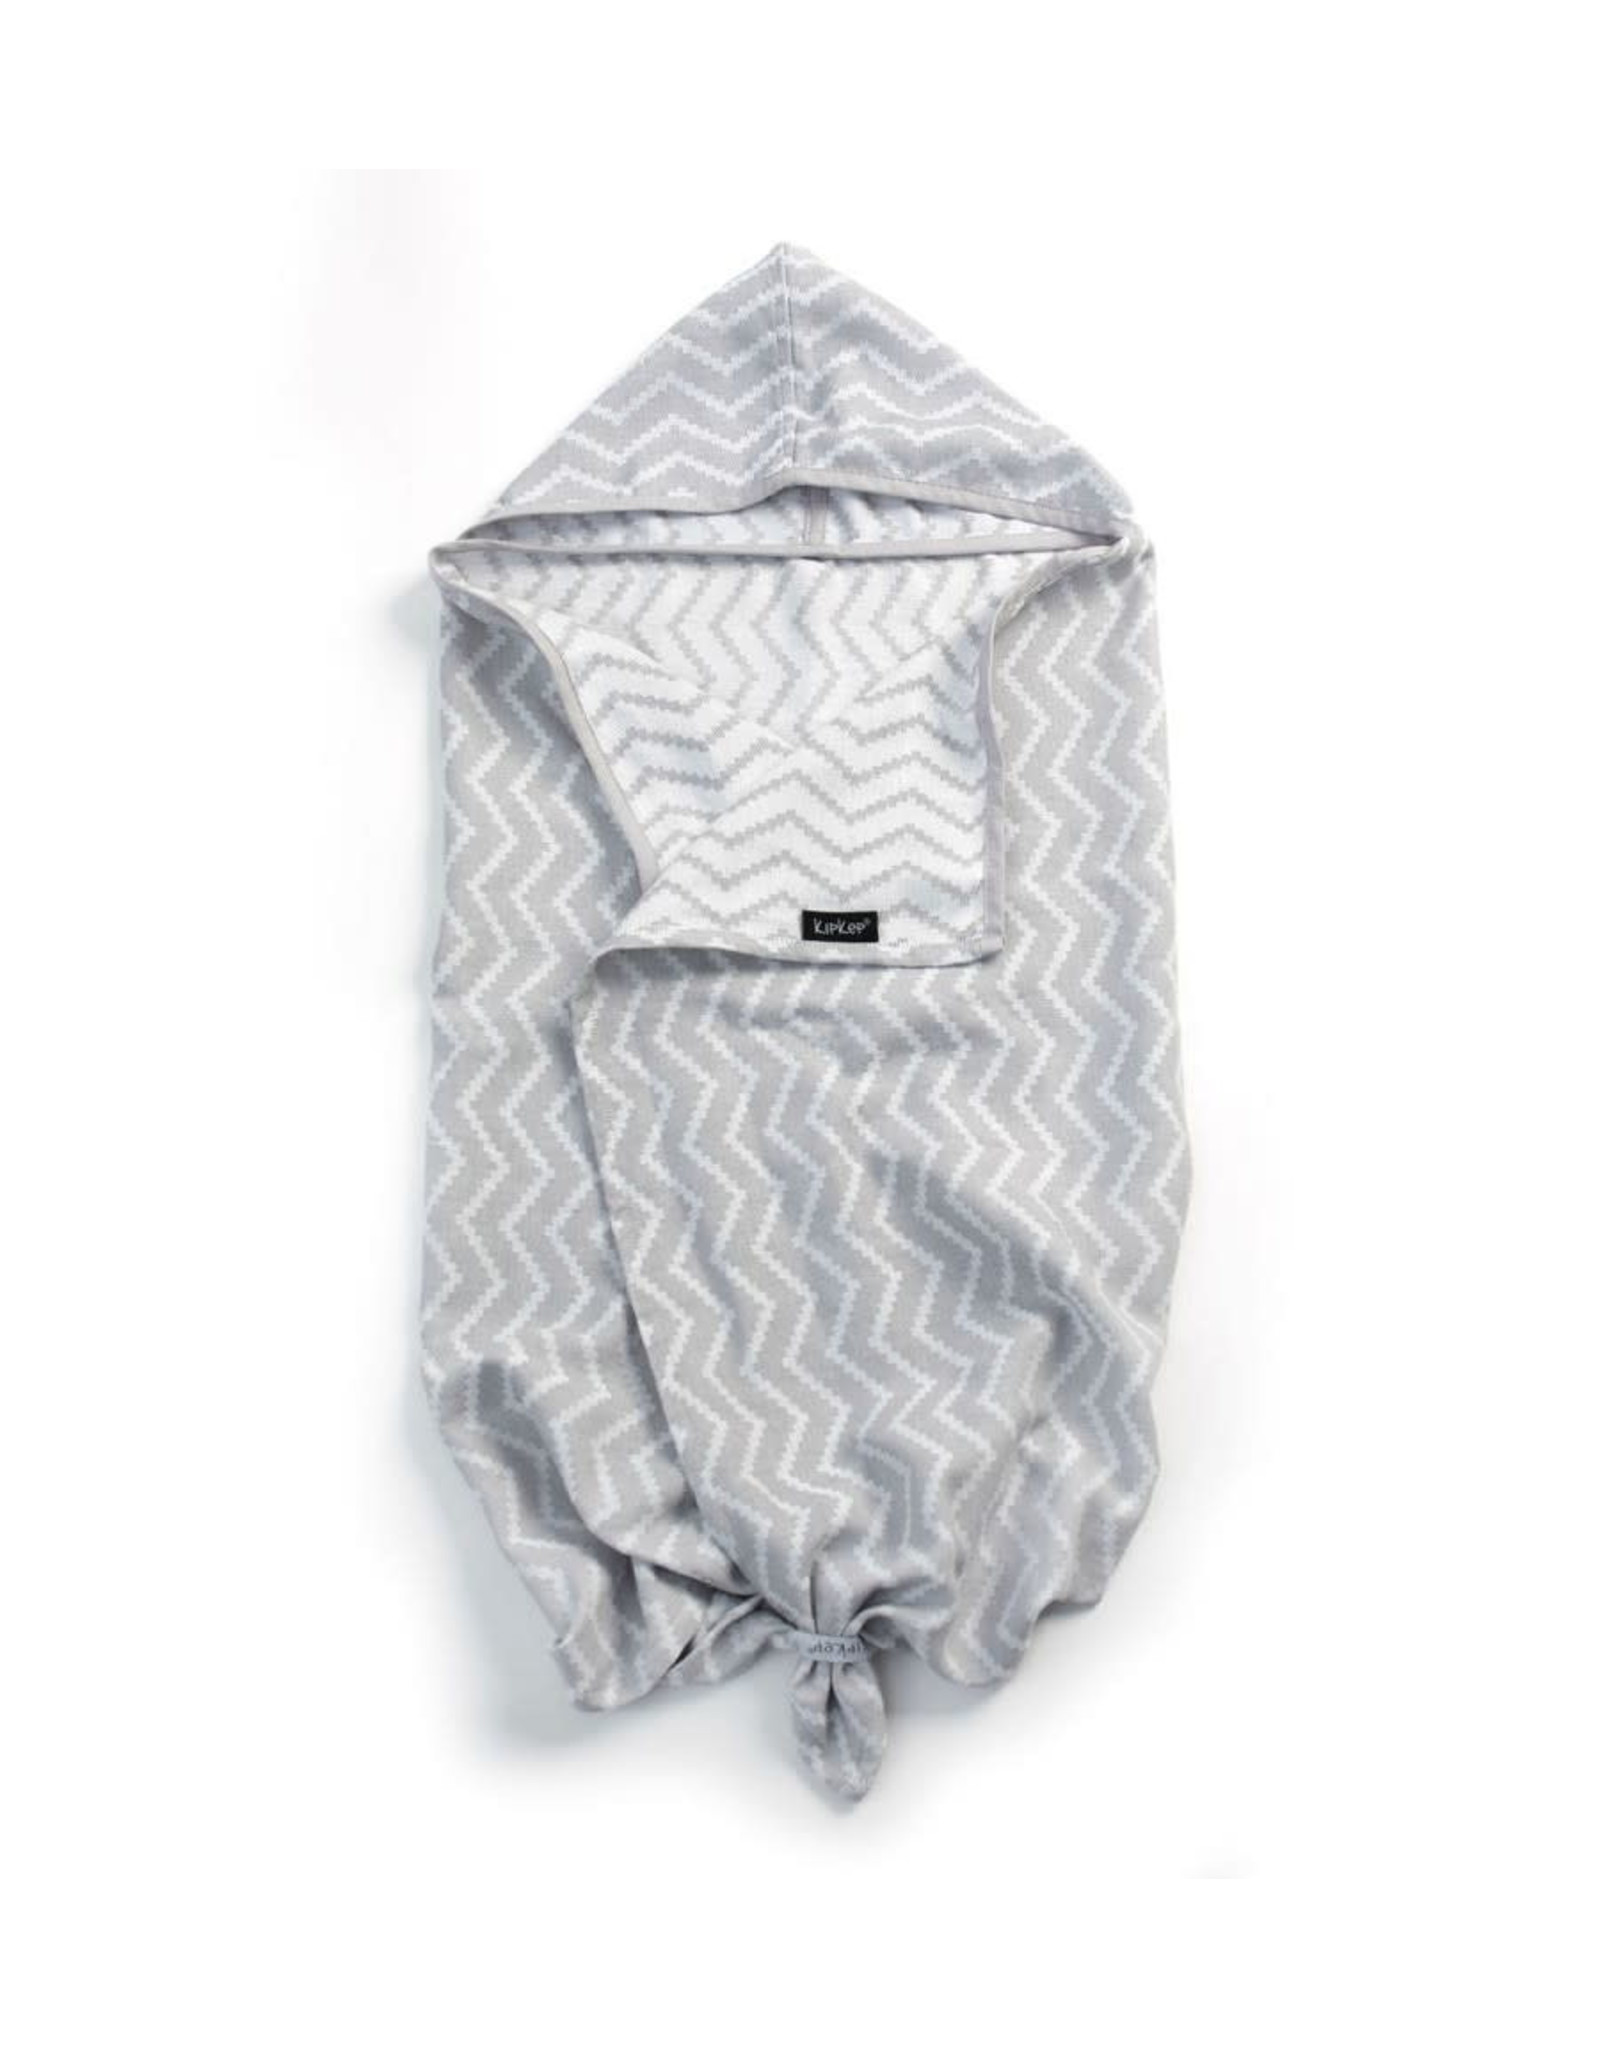 KipKep KipKep - Blenker Hooded Towel - Silver Grey